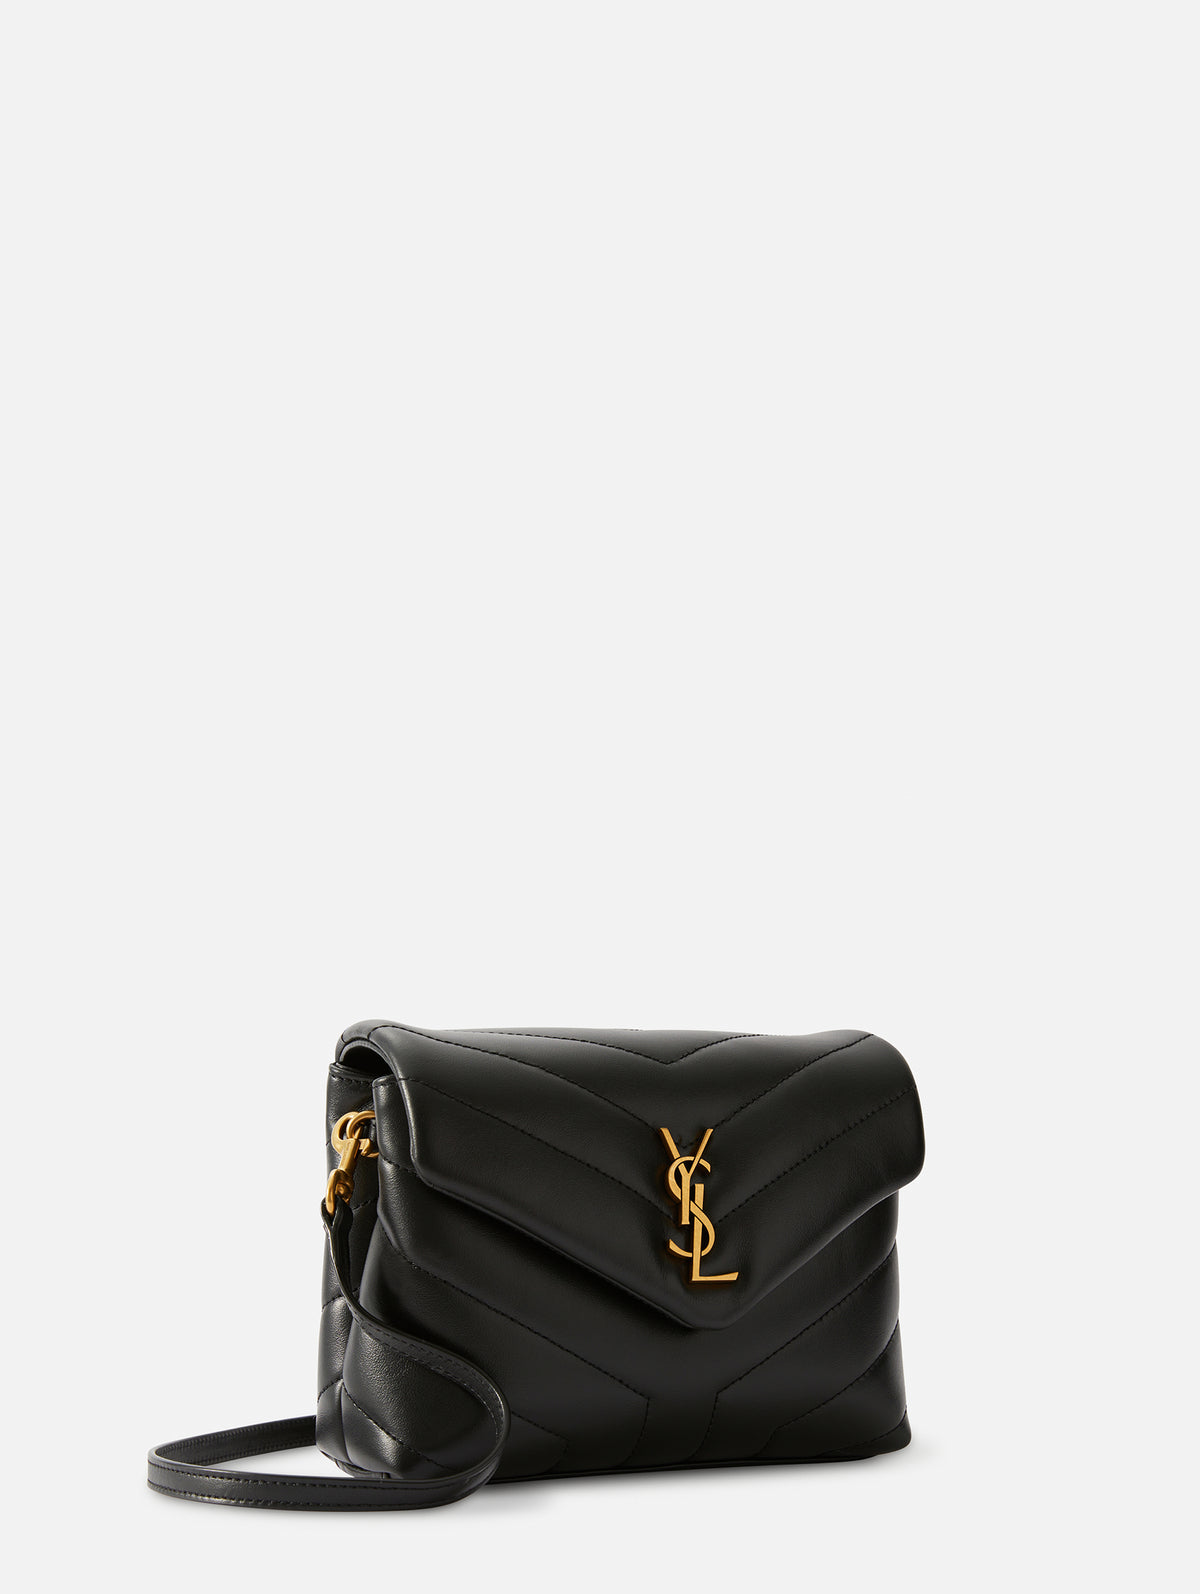 Toy Loulou Leather Shoulder Bag in Black - Saint Laurent